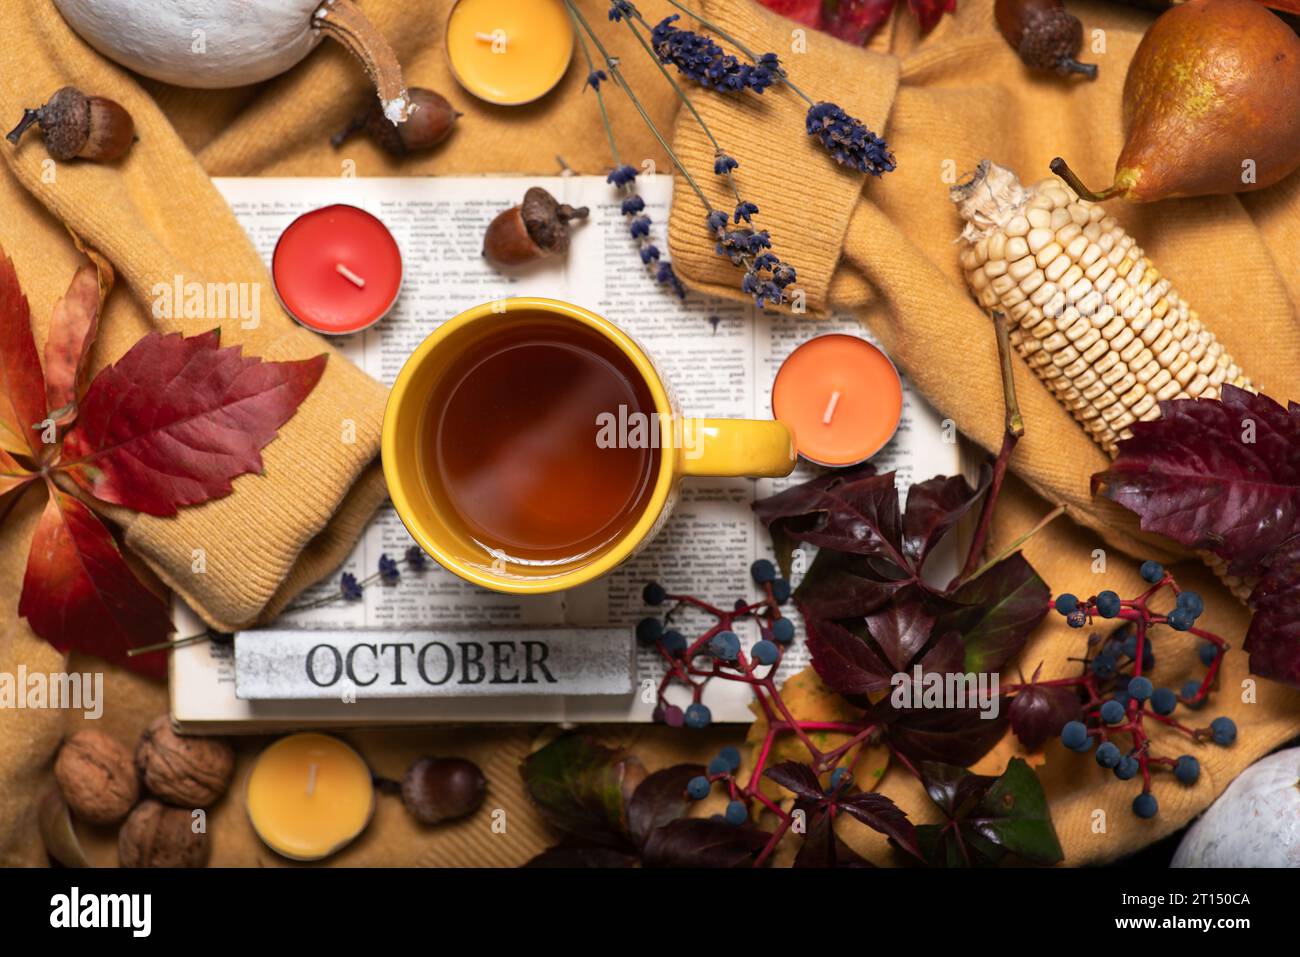 Thème d'automne avec des fruits et des couleurs d'automne. Un pull jaune avec une tasse de thé dessus, un livre, des feuilles d'automne, de petites bougies parfumées et divers fruits. Banque D'Images